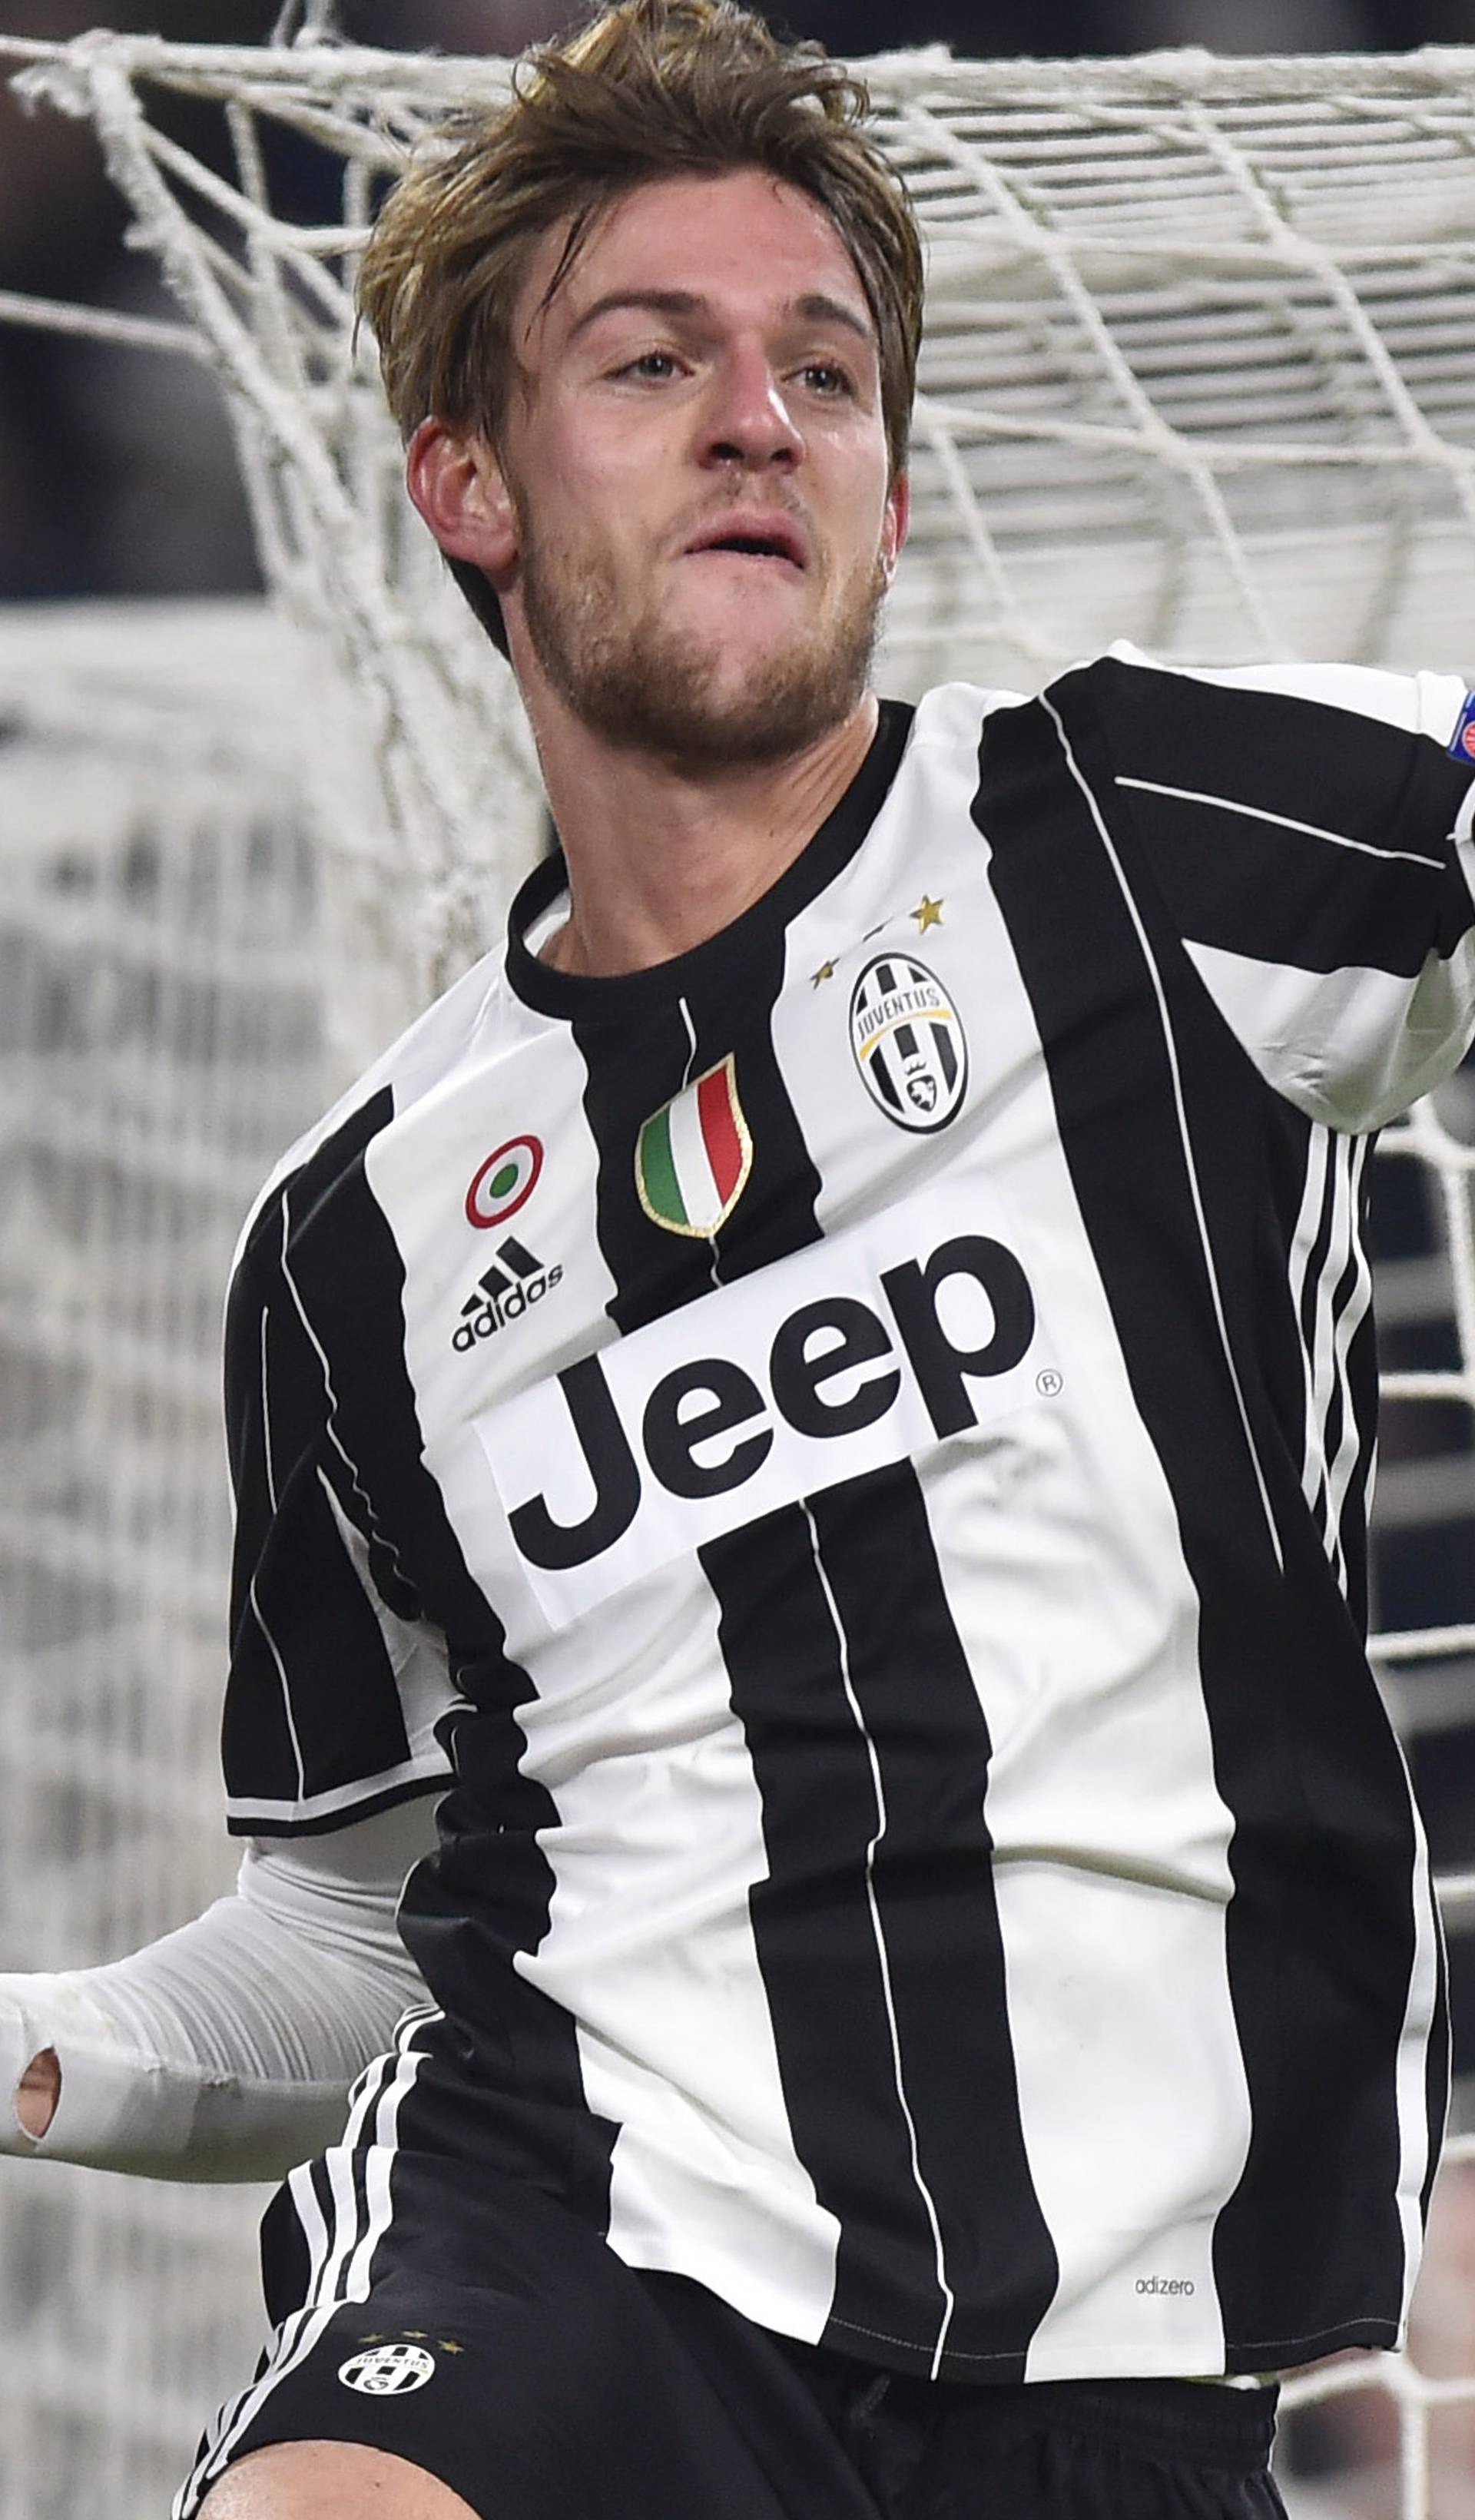 Juventus' Daniele Rugani celebrates scoring their second goal